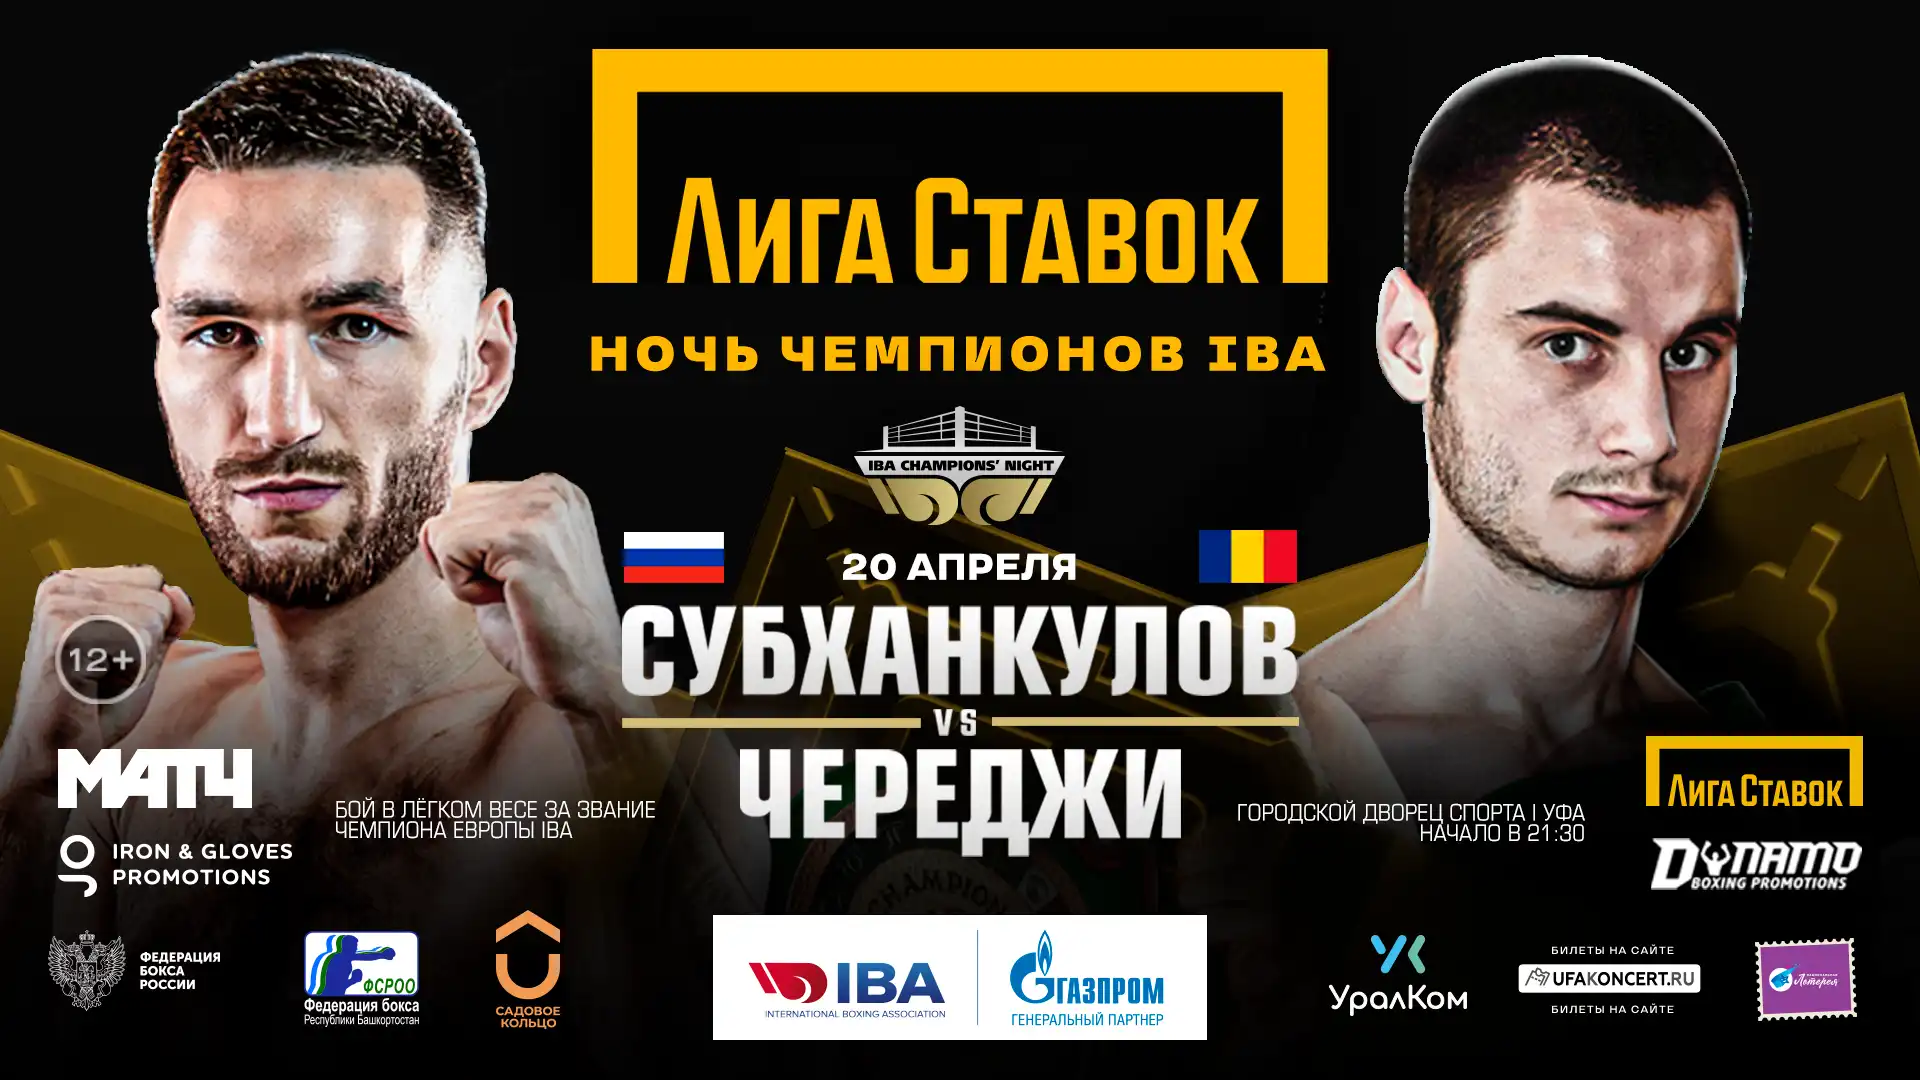 Боксер Сосулин намерен показать классный бокс с Собировым на турнире Лига Ставок. Ночь чемпионов IBA